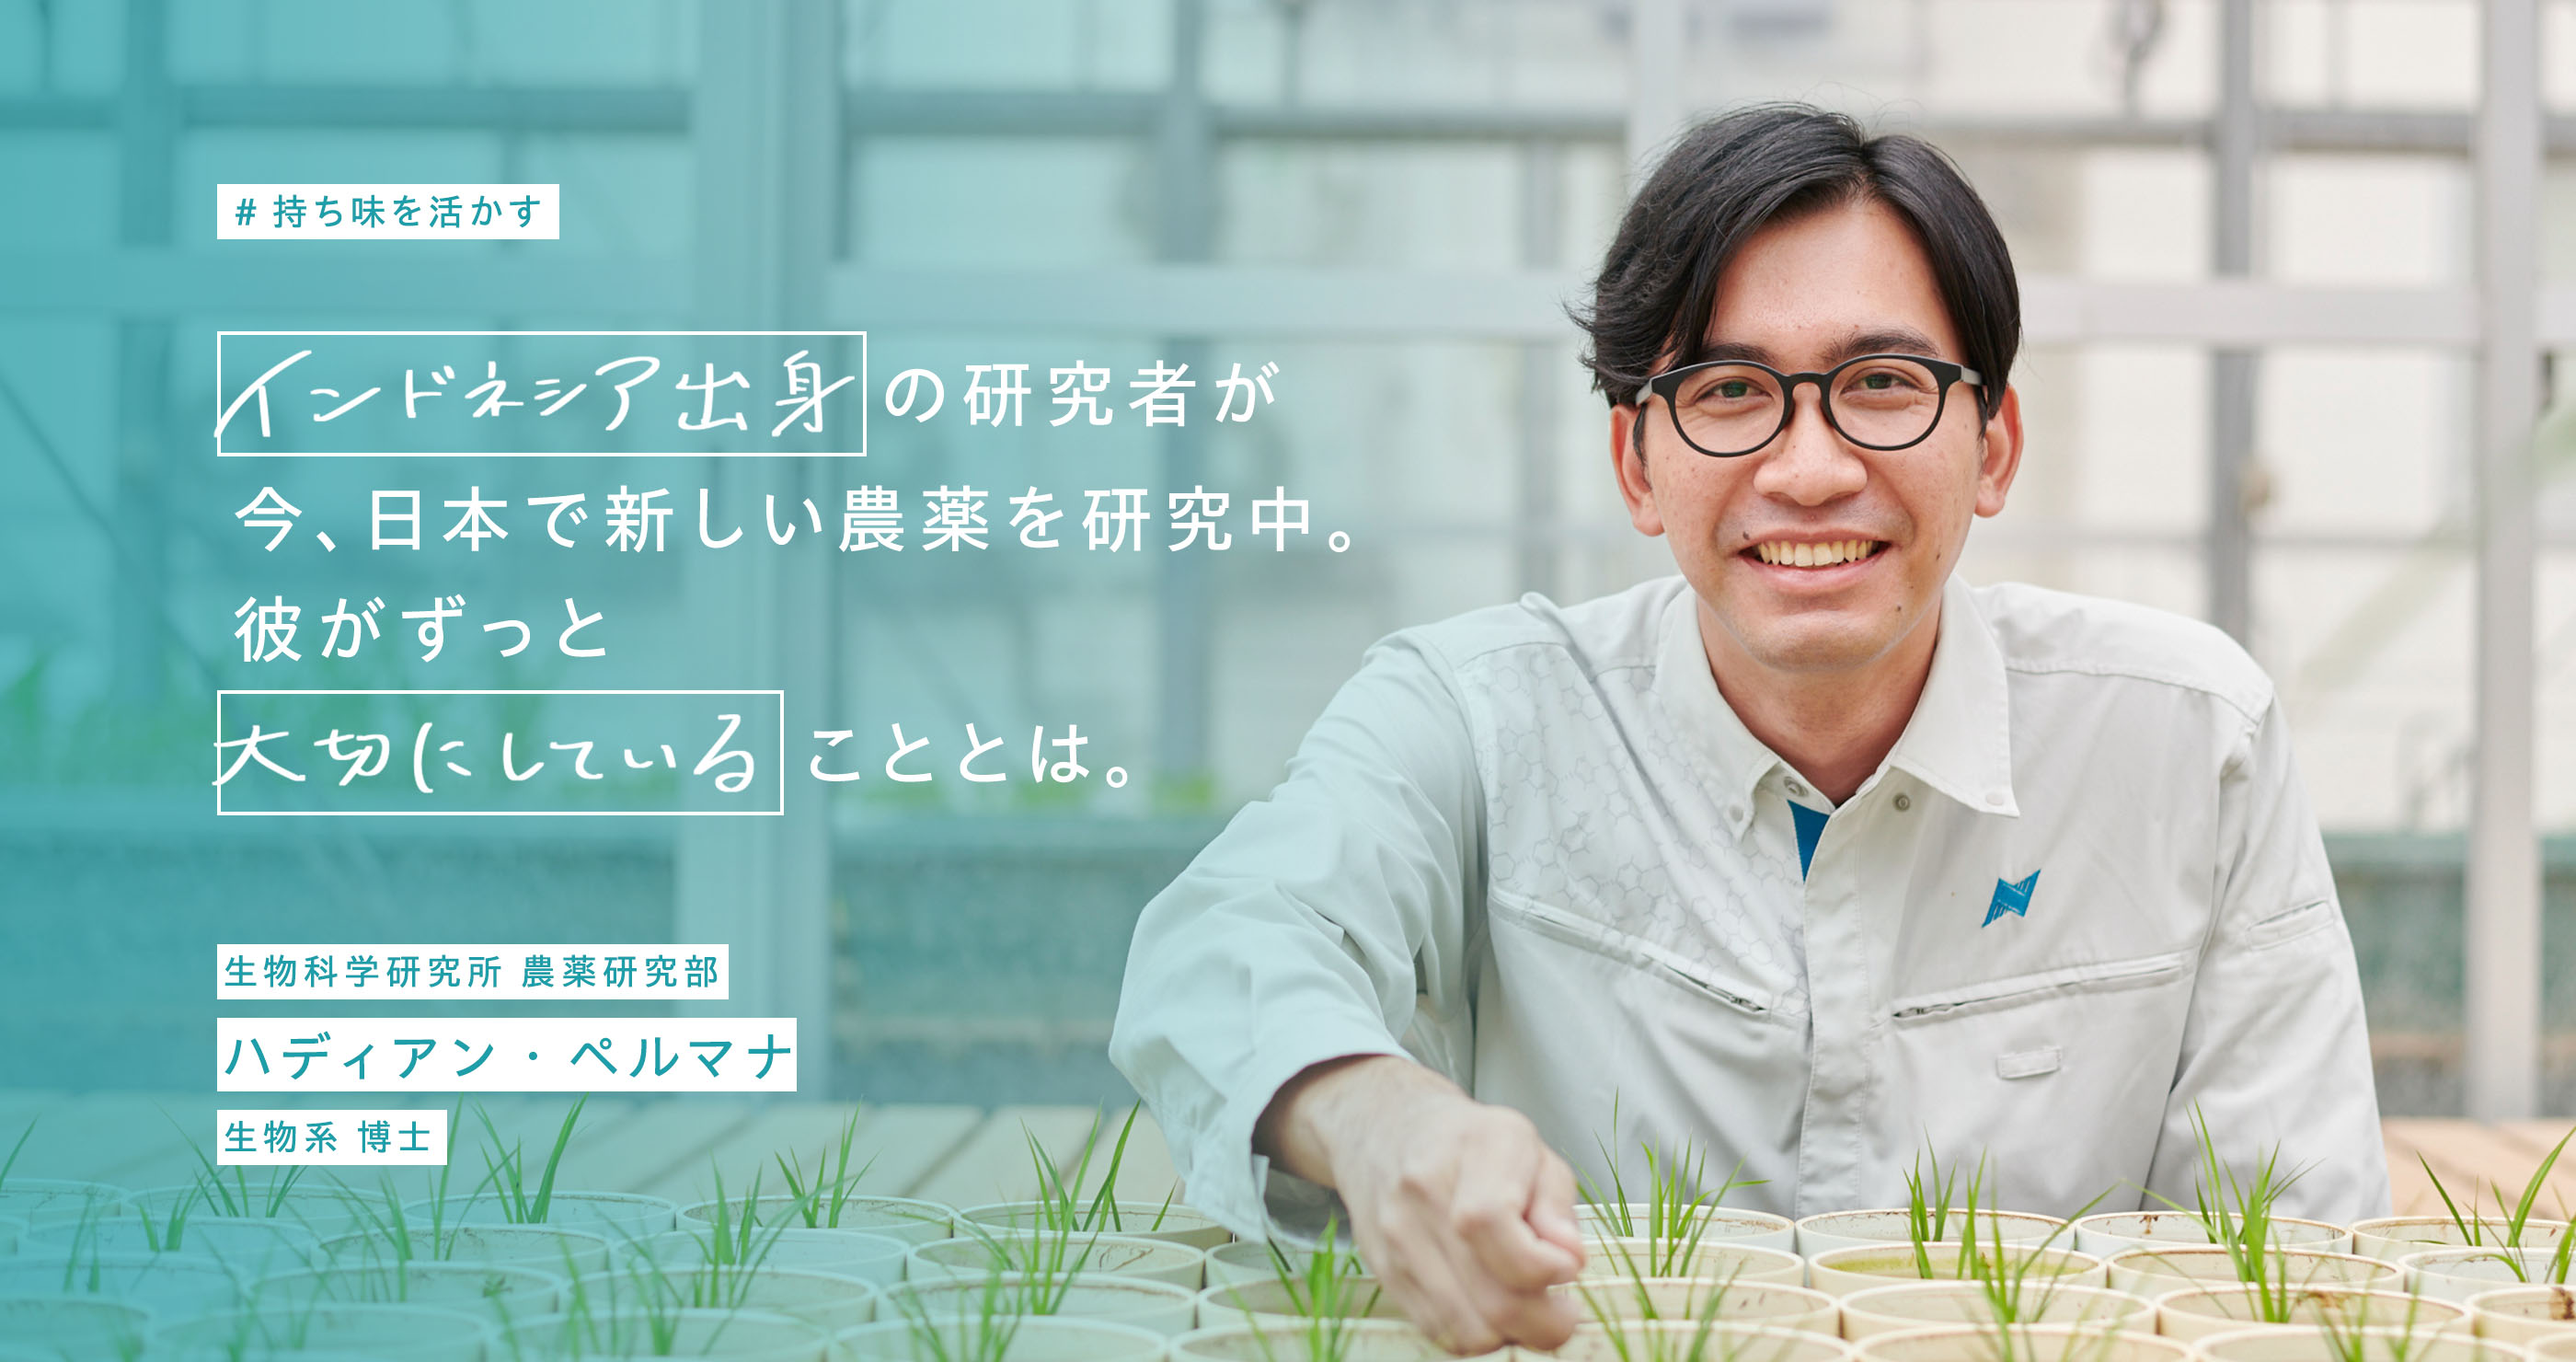 持ち味を生かす。インドネシア出身の研究者が今、日本で新しい農薬を研究中。彼がずっと大切にしていることとは。生物科学研究所 農薬研究部。ハディアン・ペルマナ。生物系 博士。